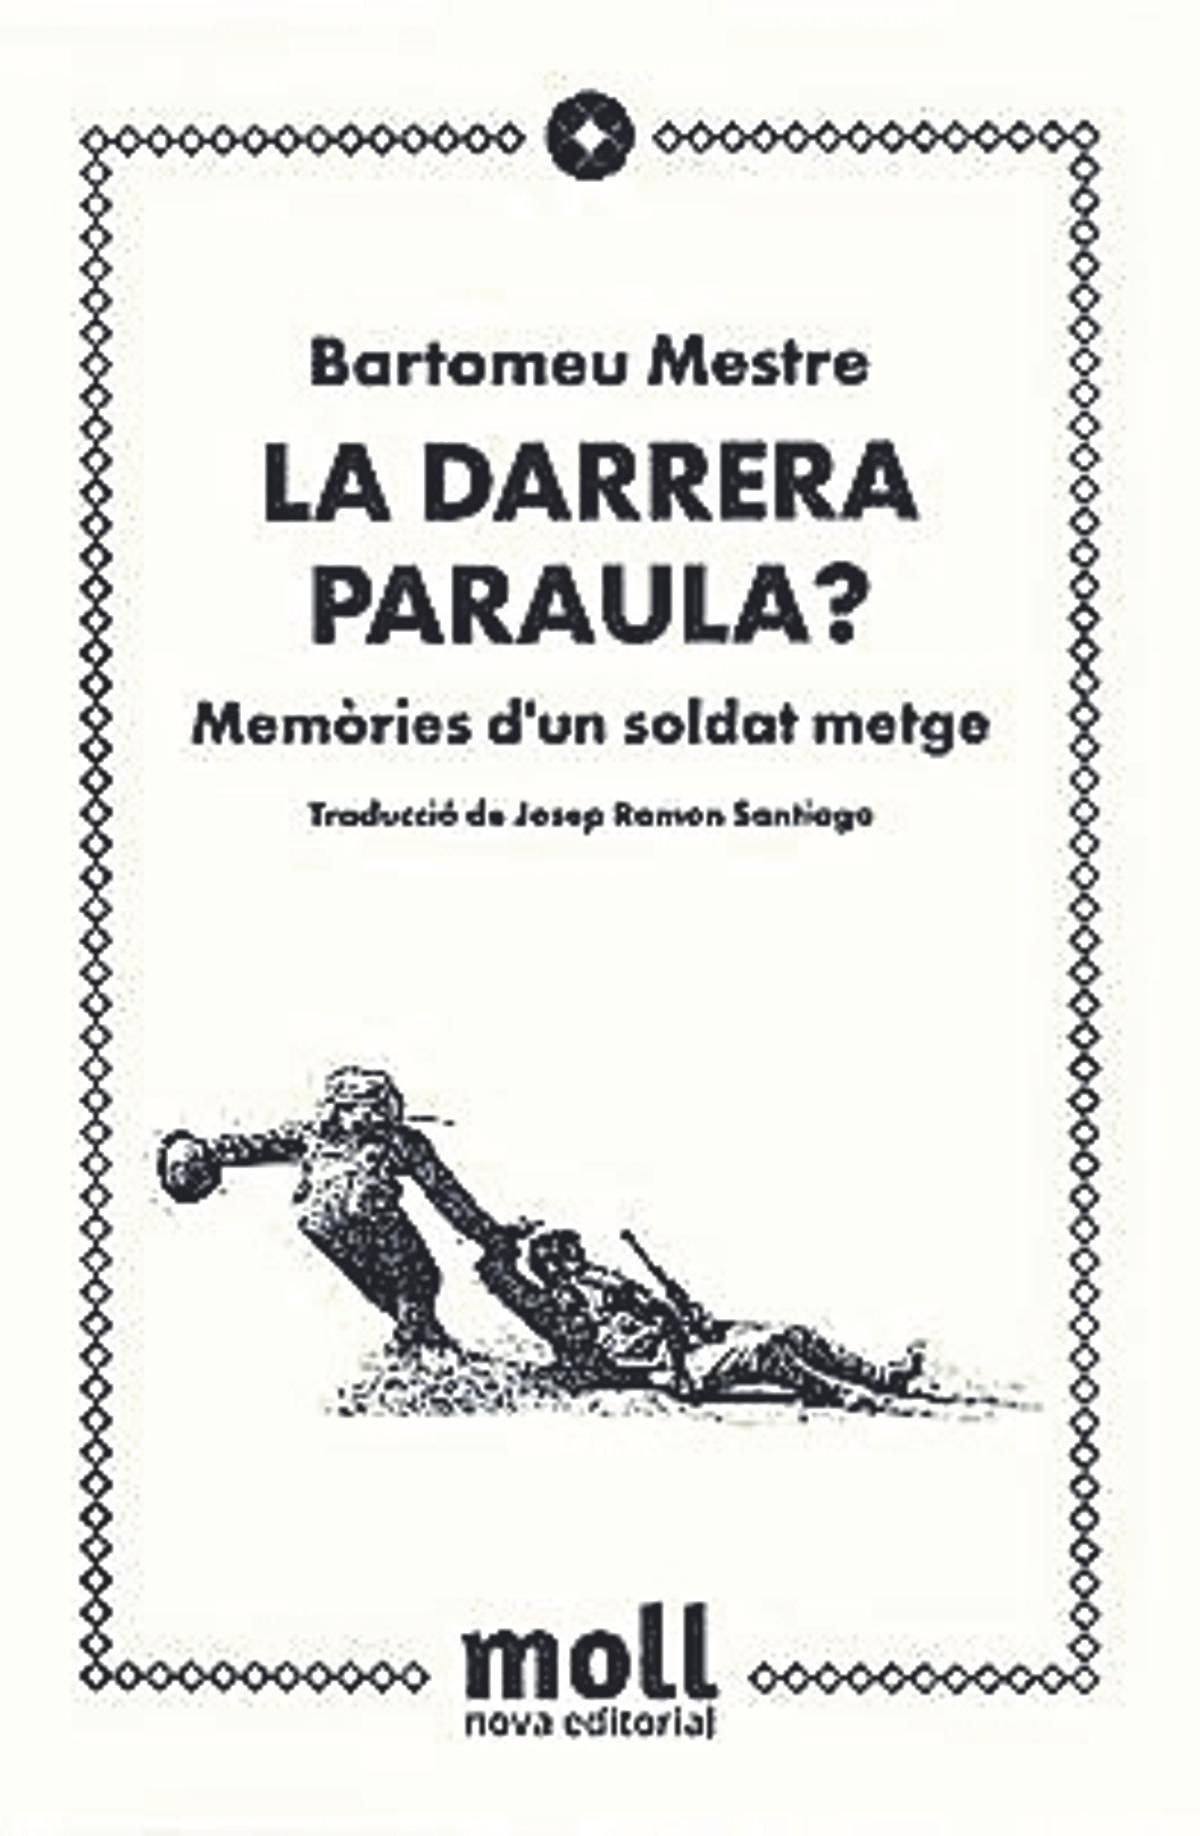 La darrera paraula? Memòries d’un soldat metge, Bartomeu Mestre i Mestre, Nova editorial Moll, 462 pàgines. 23,75 euros.